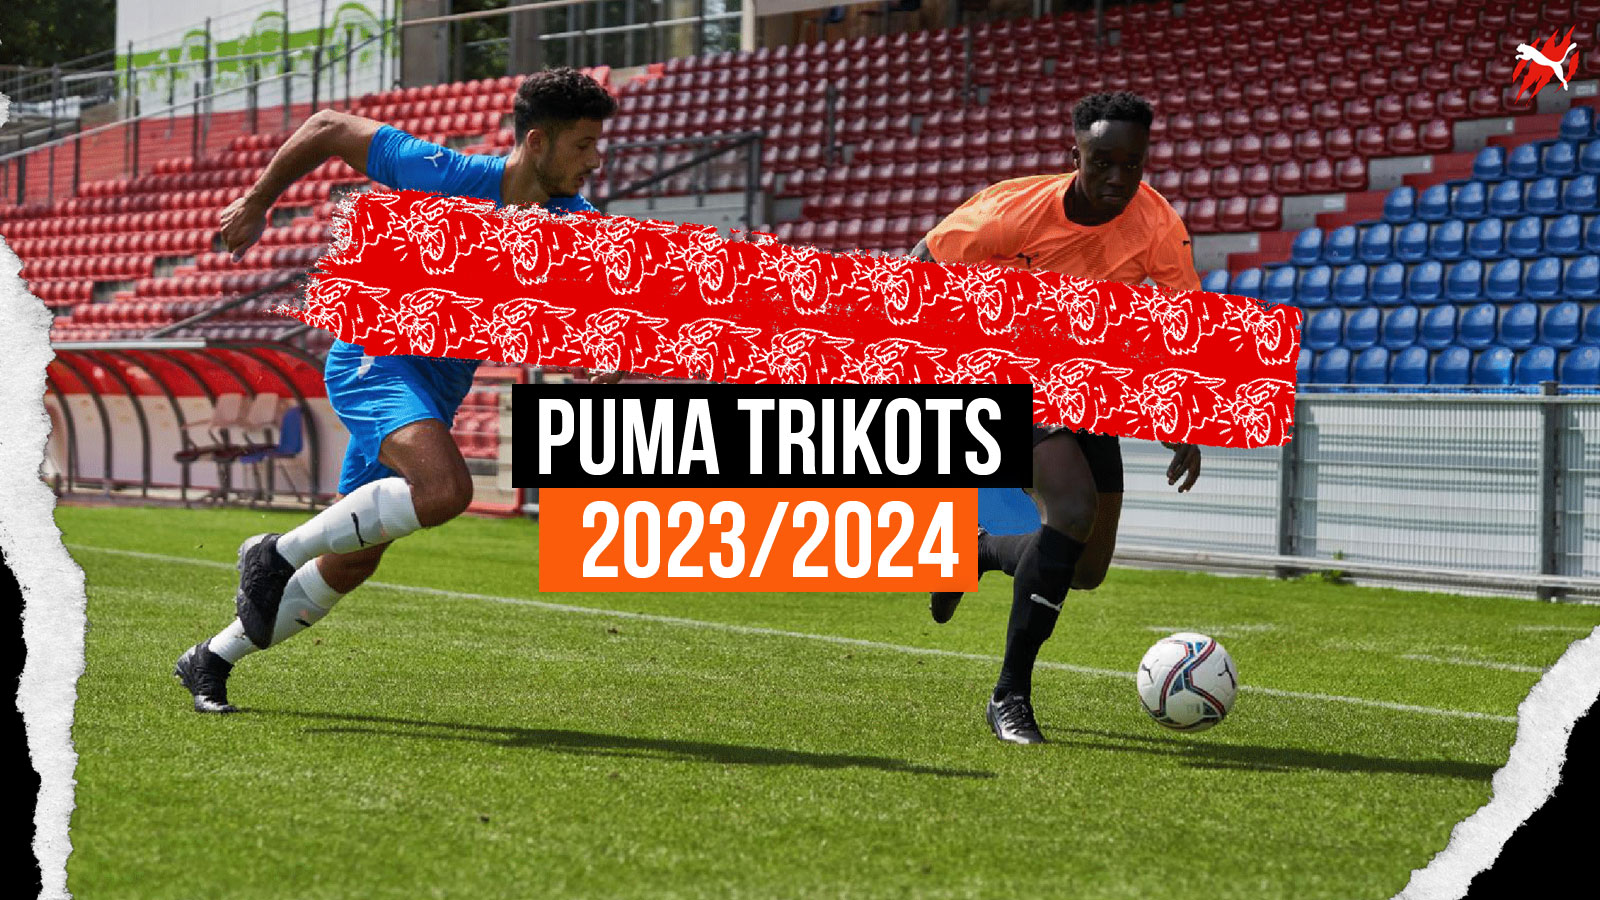 die neuen Puma Trikots für 2023/2024 im Teamsport Katalog für den Fußball